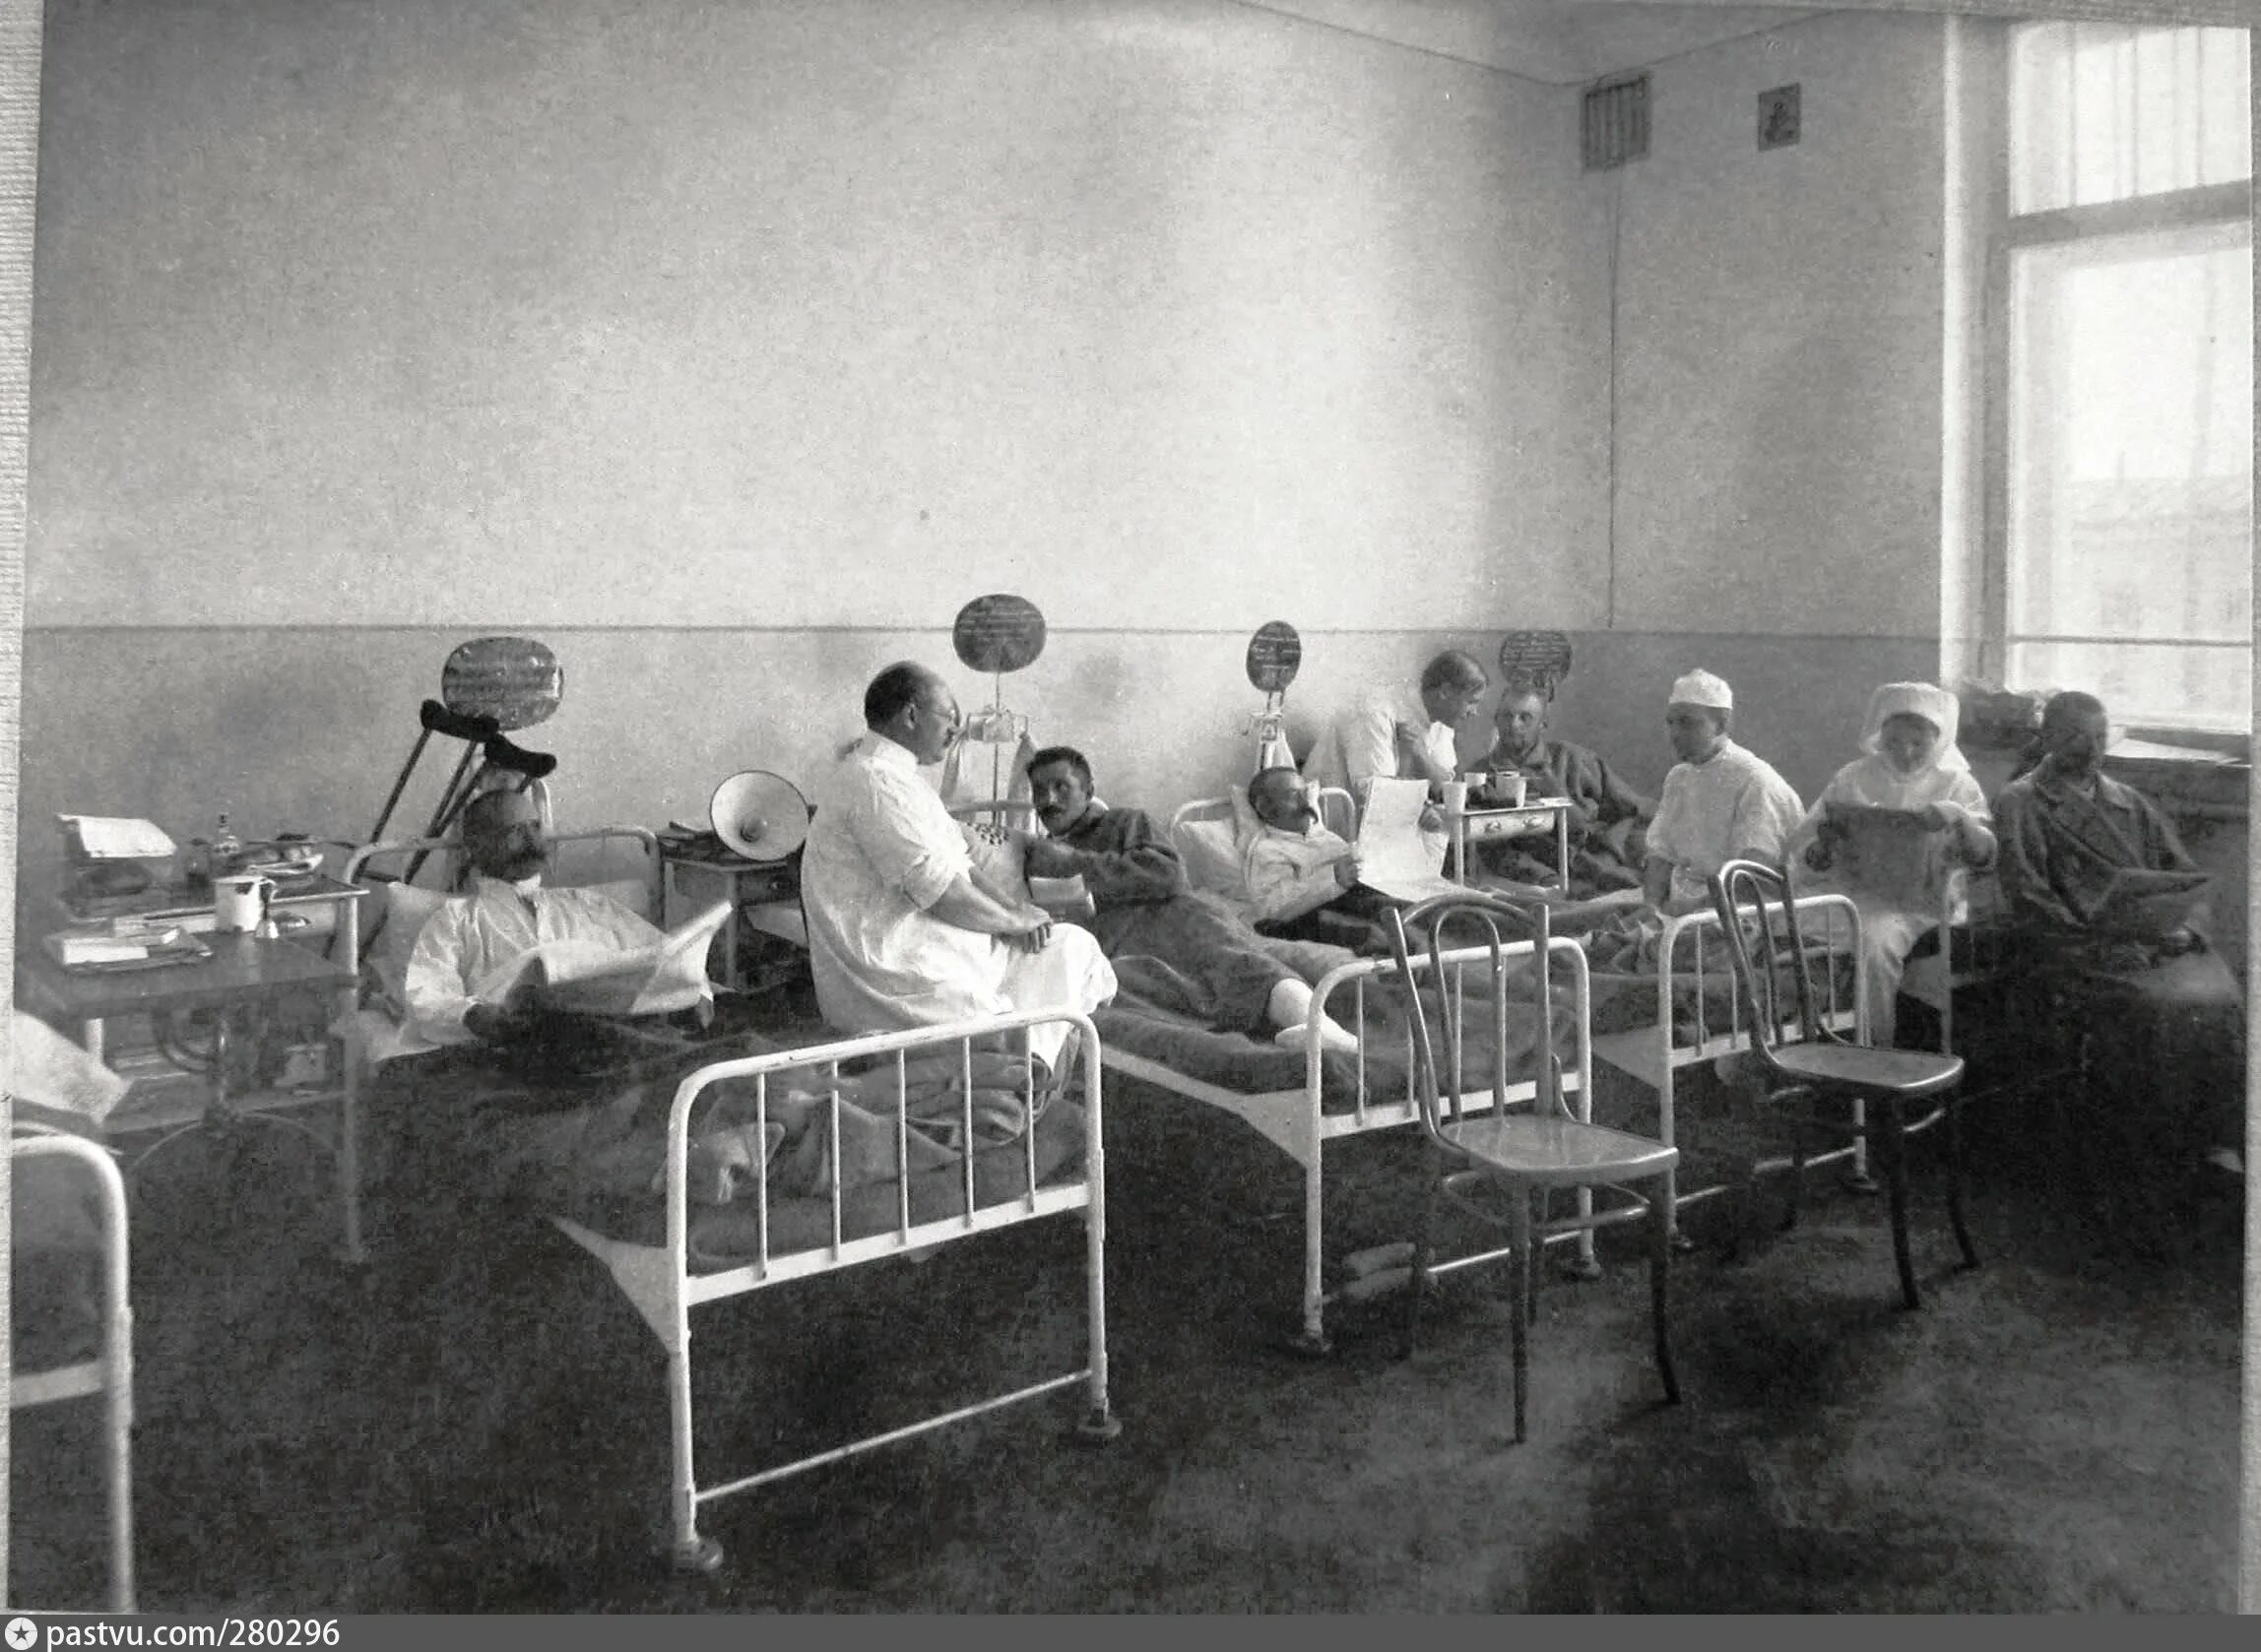 Егэ госпиталь. Барачная больница в Петербурге 1901 года. Операционная 1914 году госпиталь. Родильный госпиталь России 19 века.